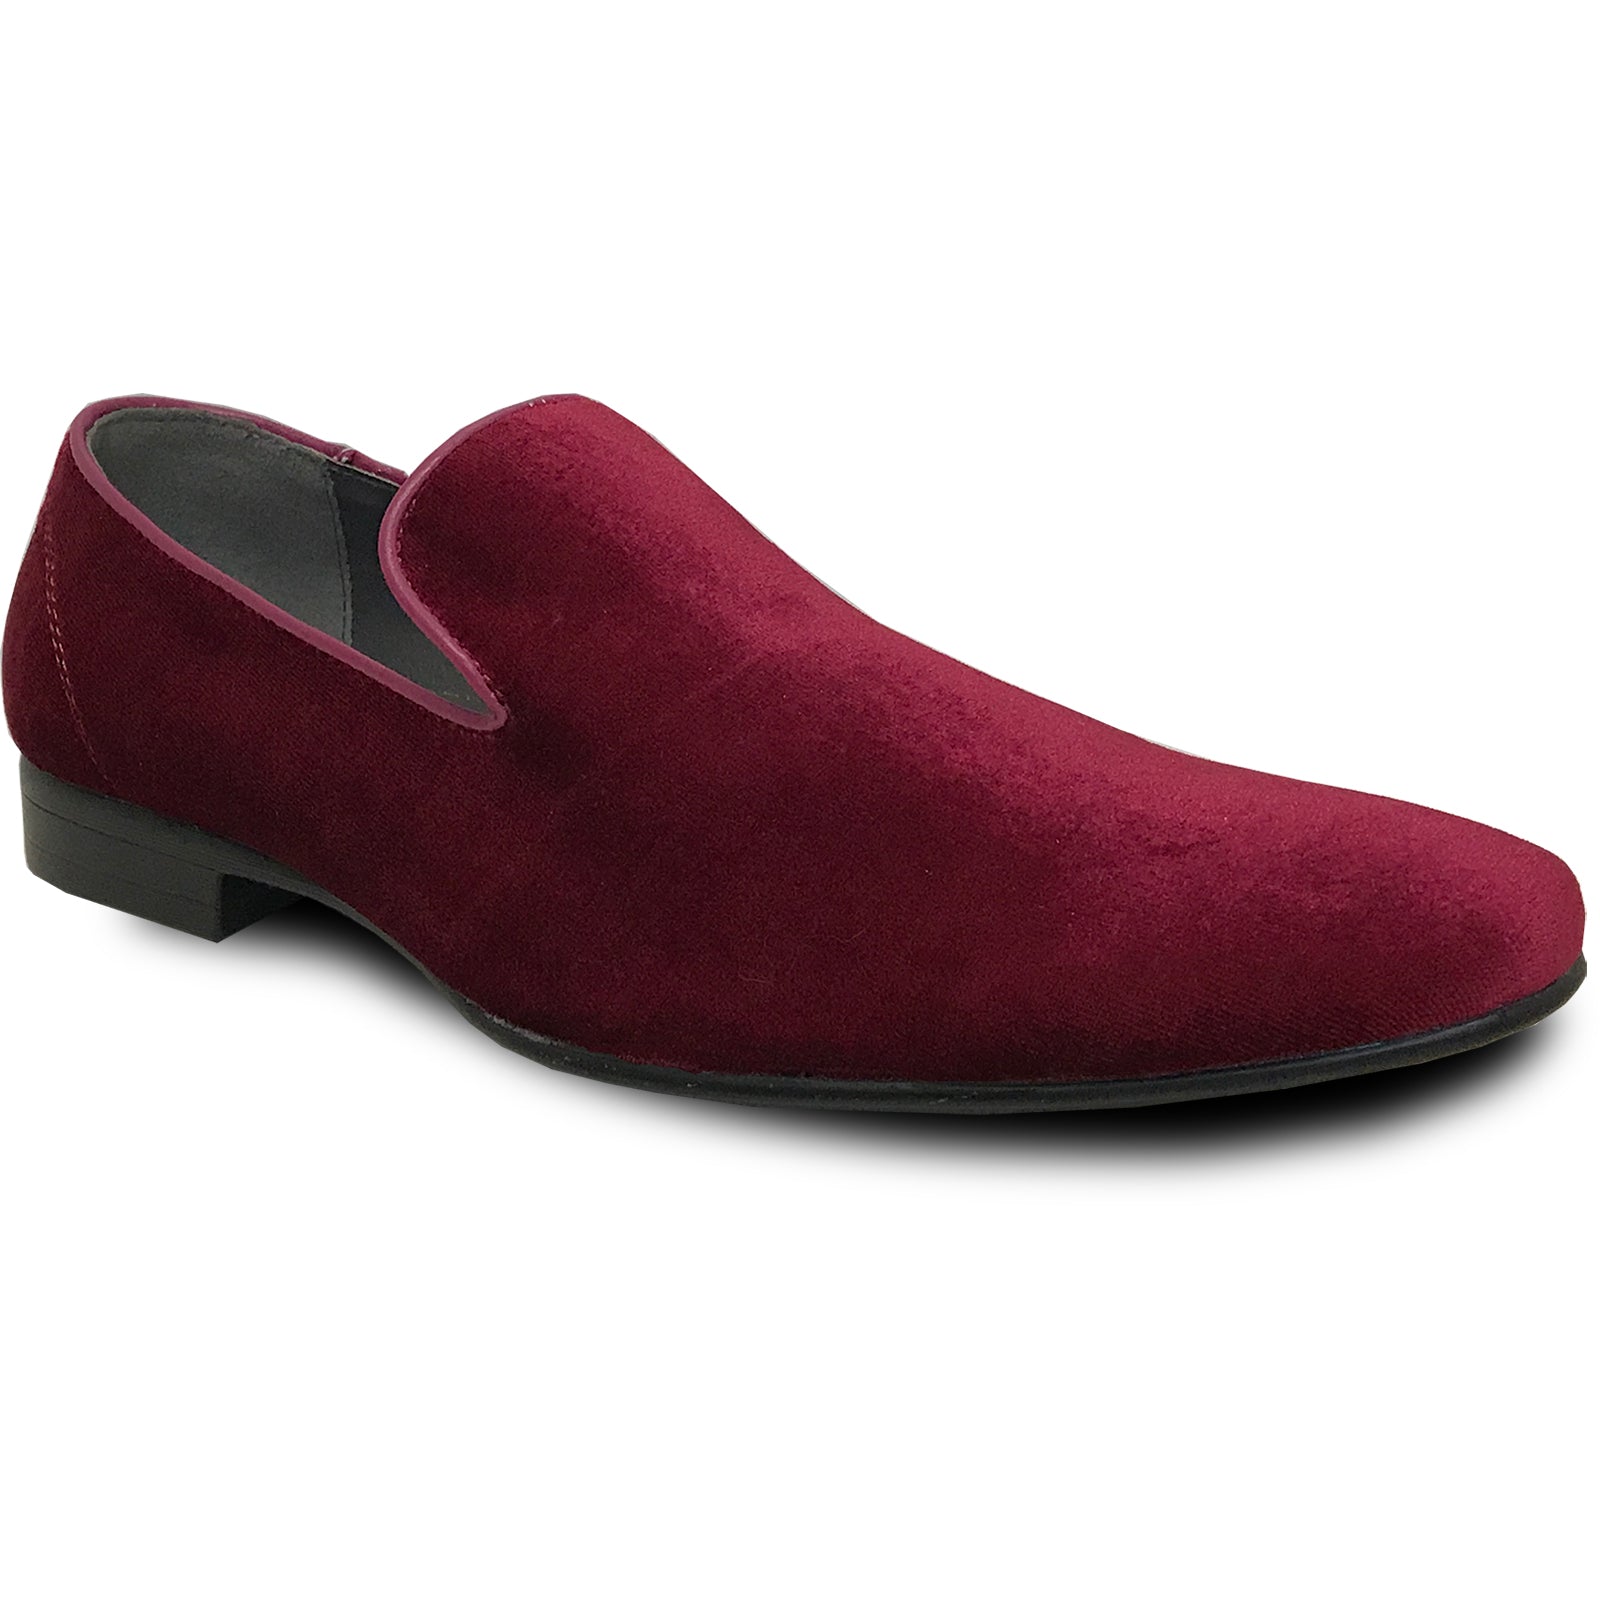 "Burgundy Velvet Tuxedo Loafers - Modern Men's Slip-On Style"